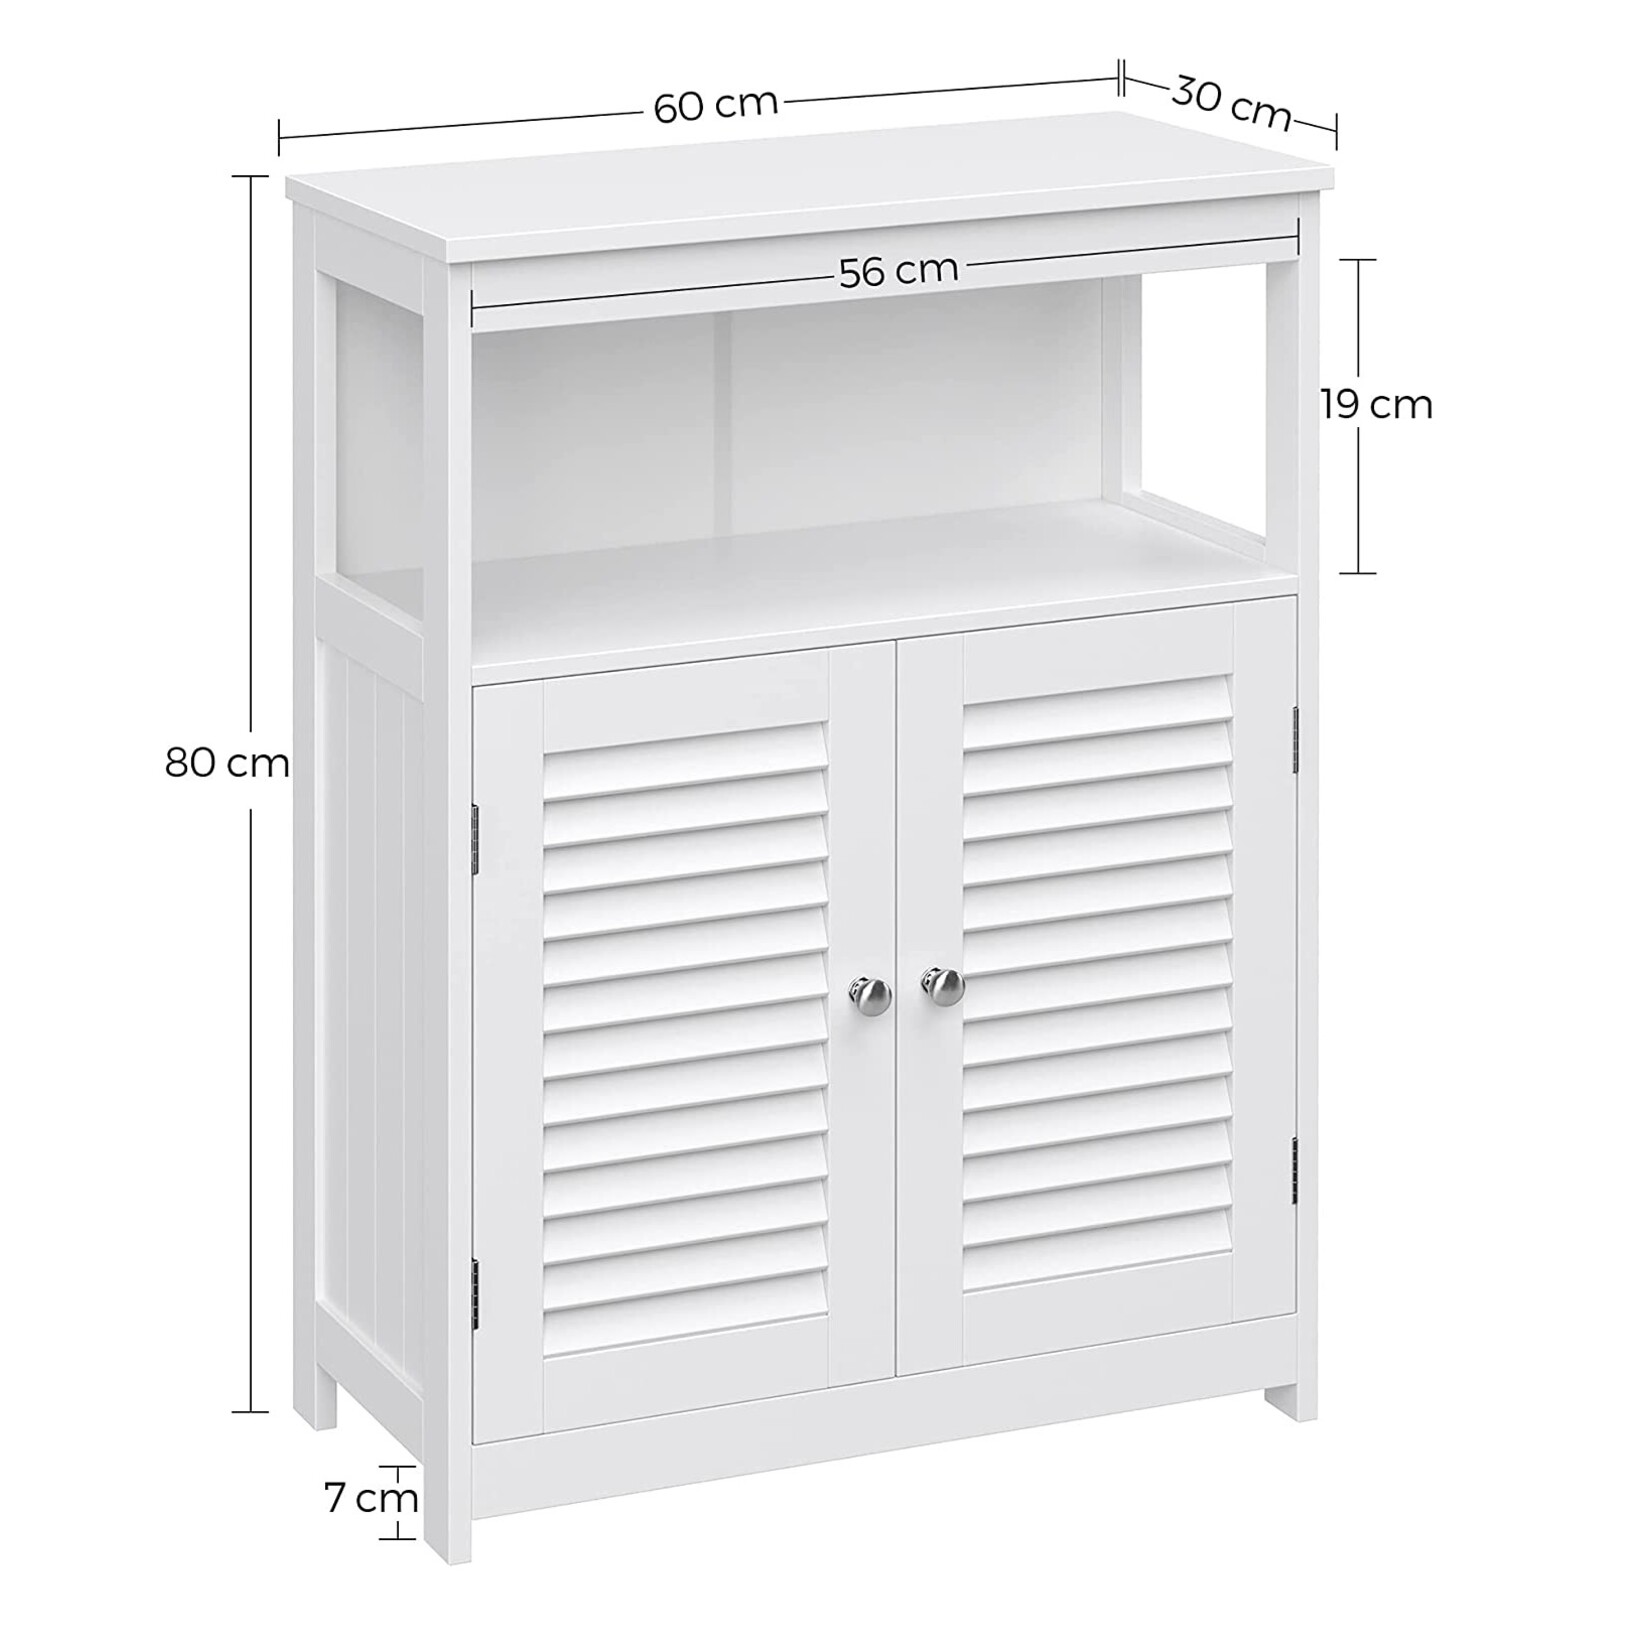 Bobbel Home Bobbel Home - White Bathroom Cabinet - Includes 2 Slat Doors - Rustic - MDF